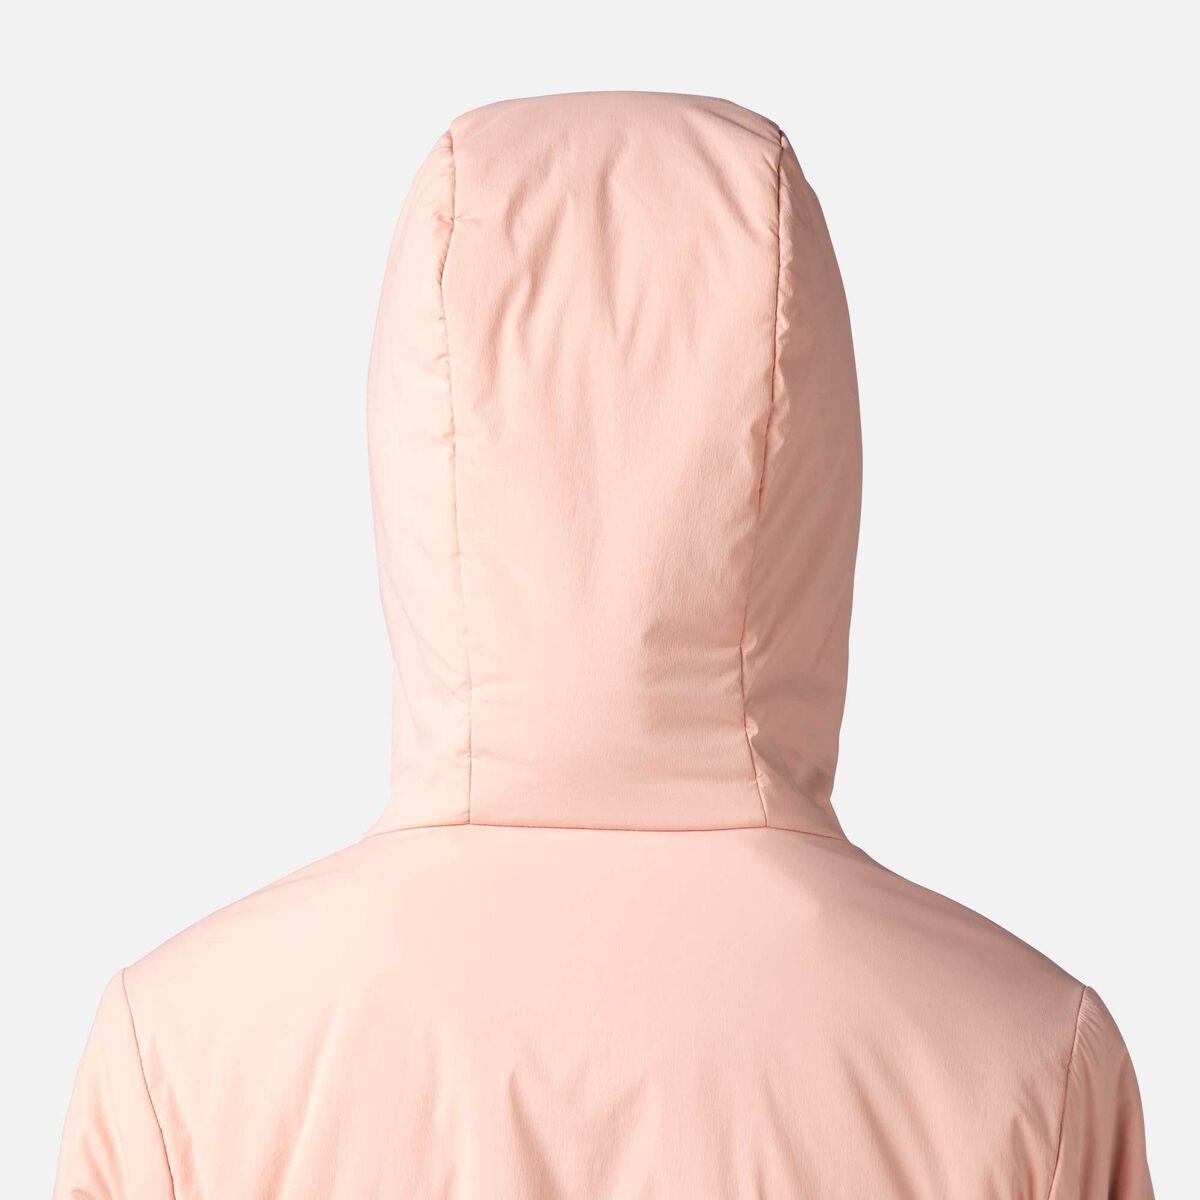 Women's Opside Hooded Jacket